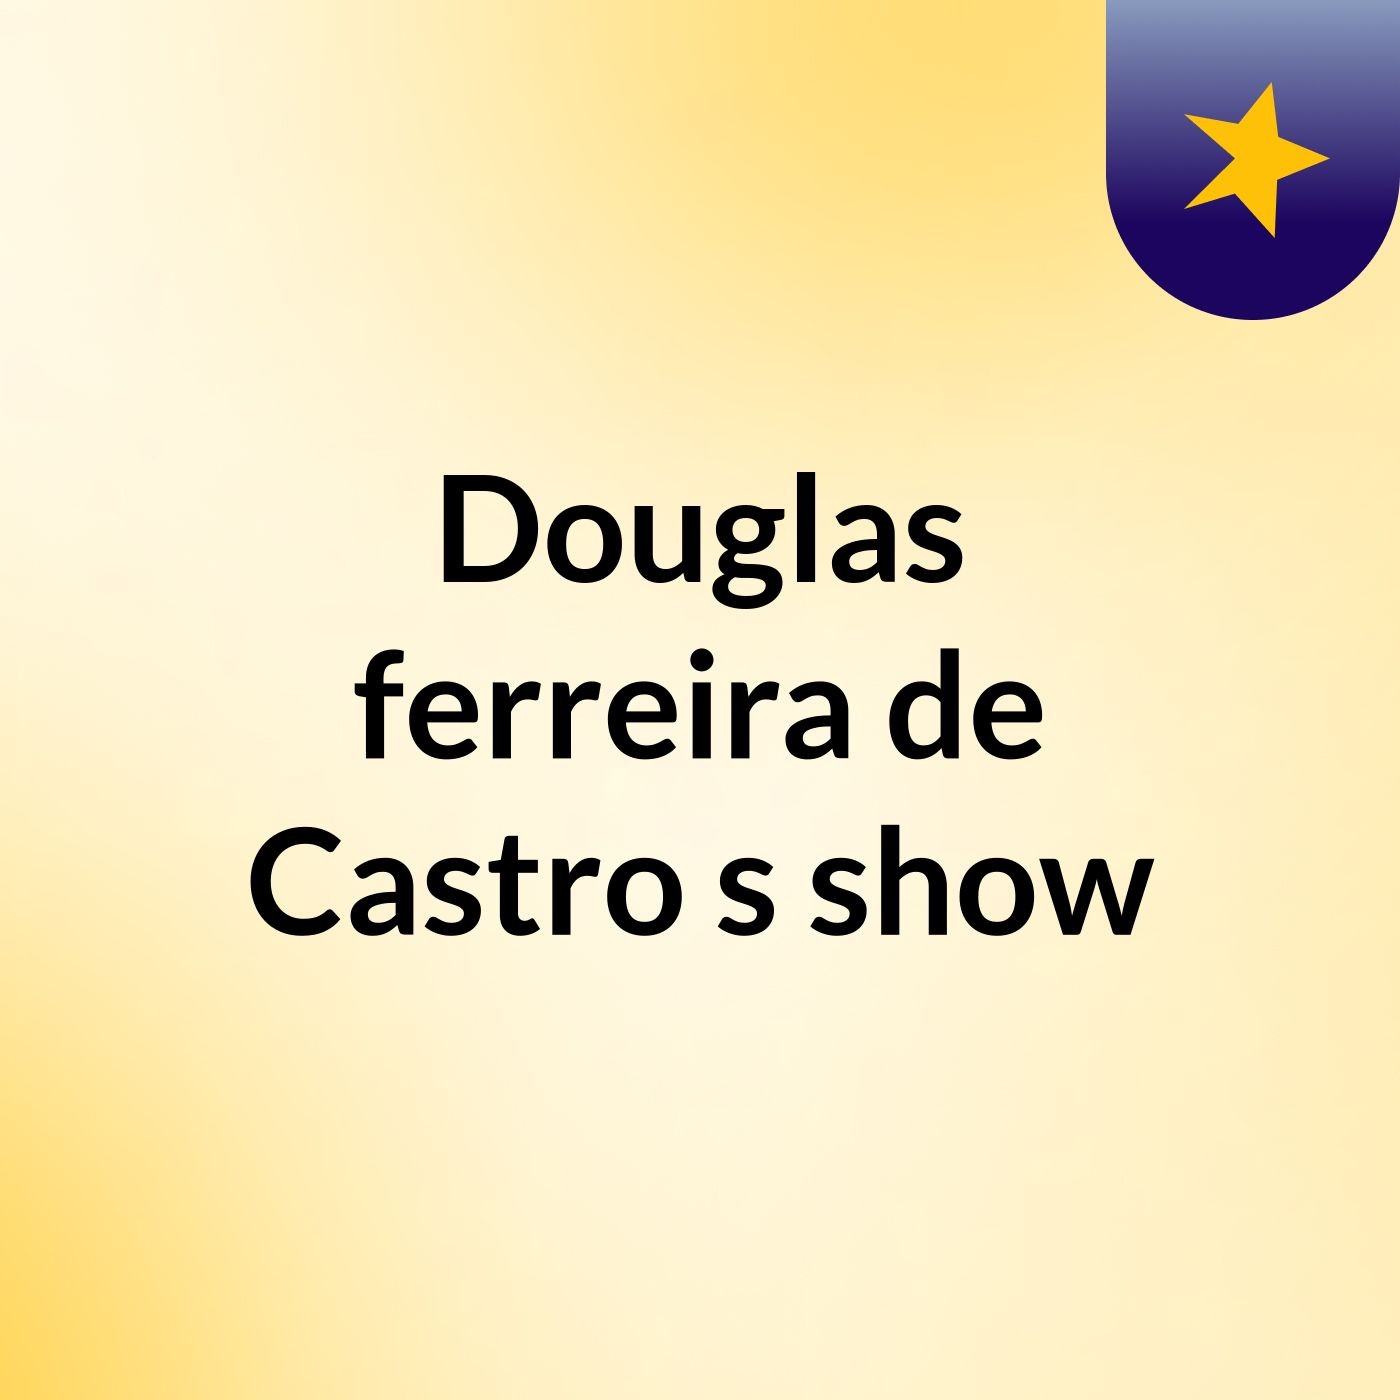 Douglas ferreira de Castro's show